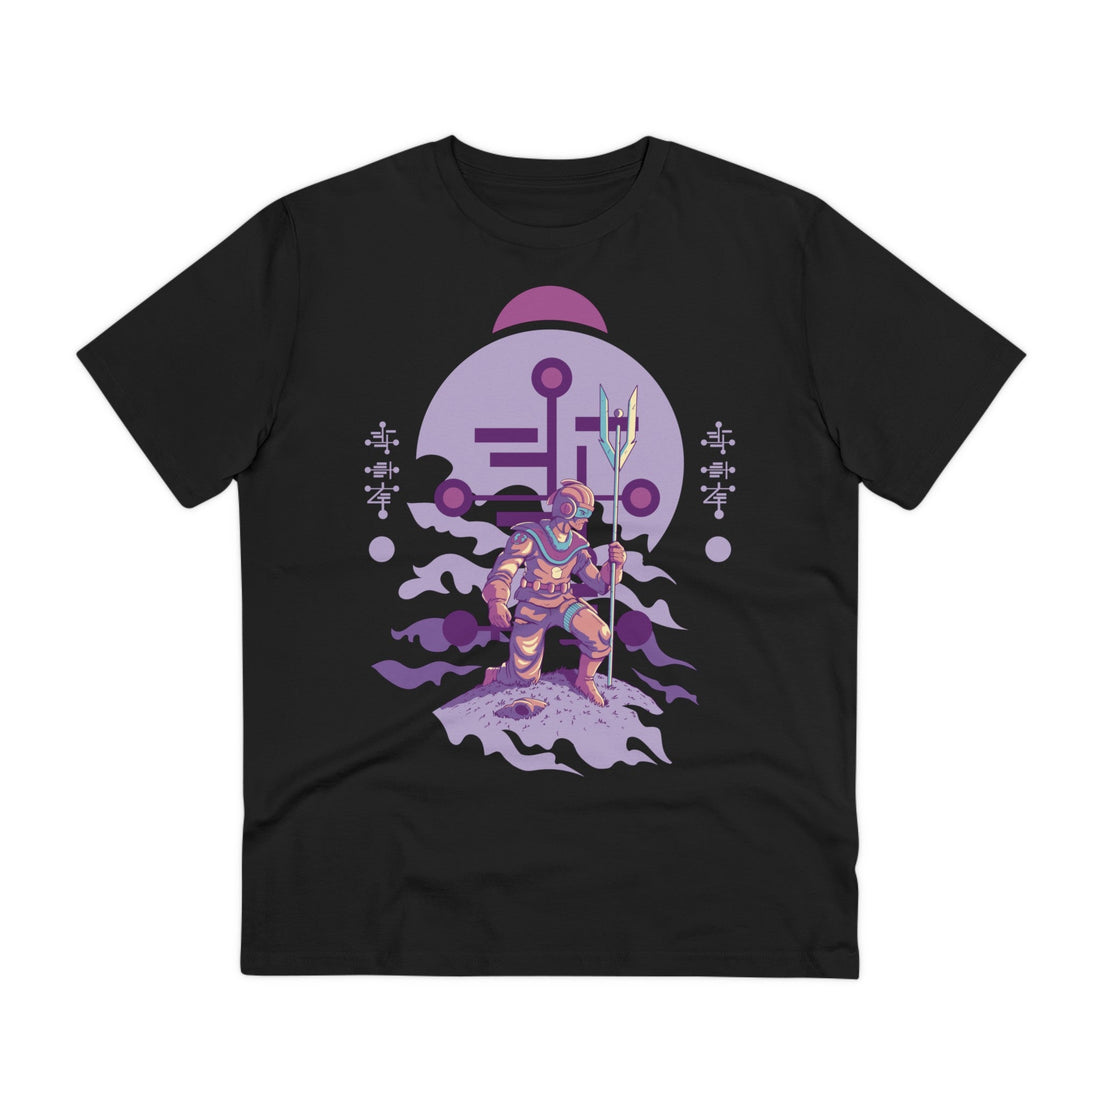 Printify T-Shirt Black / 2XS Humanoid Alien kneeling with staff and helmet - Alien Warrior - Front Design